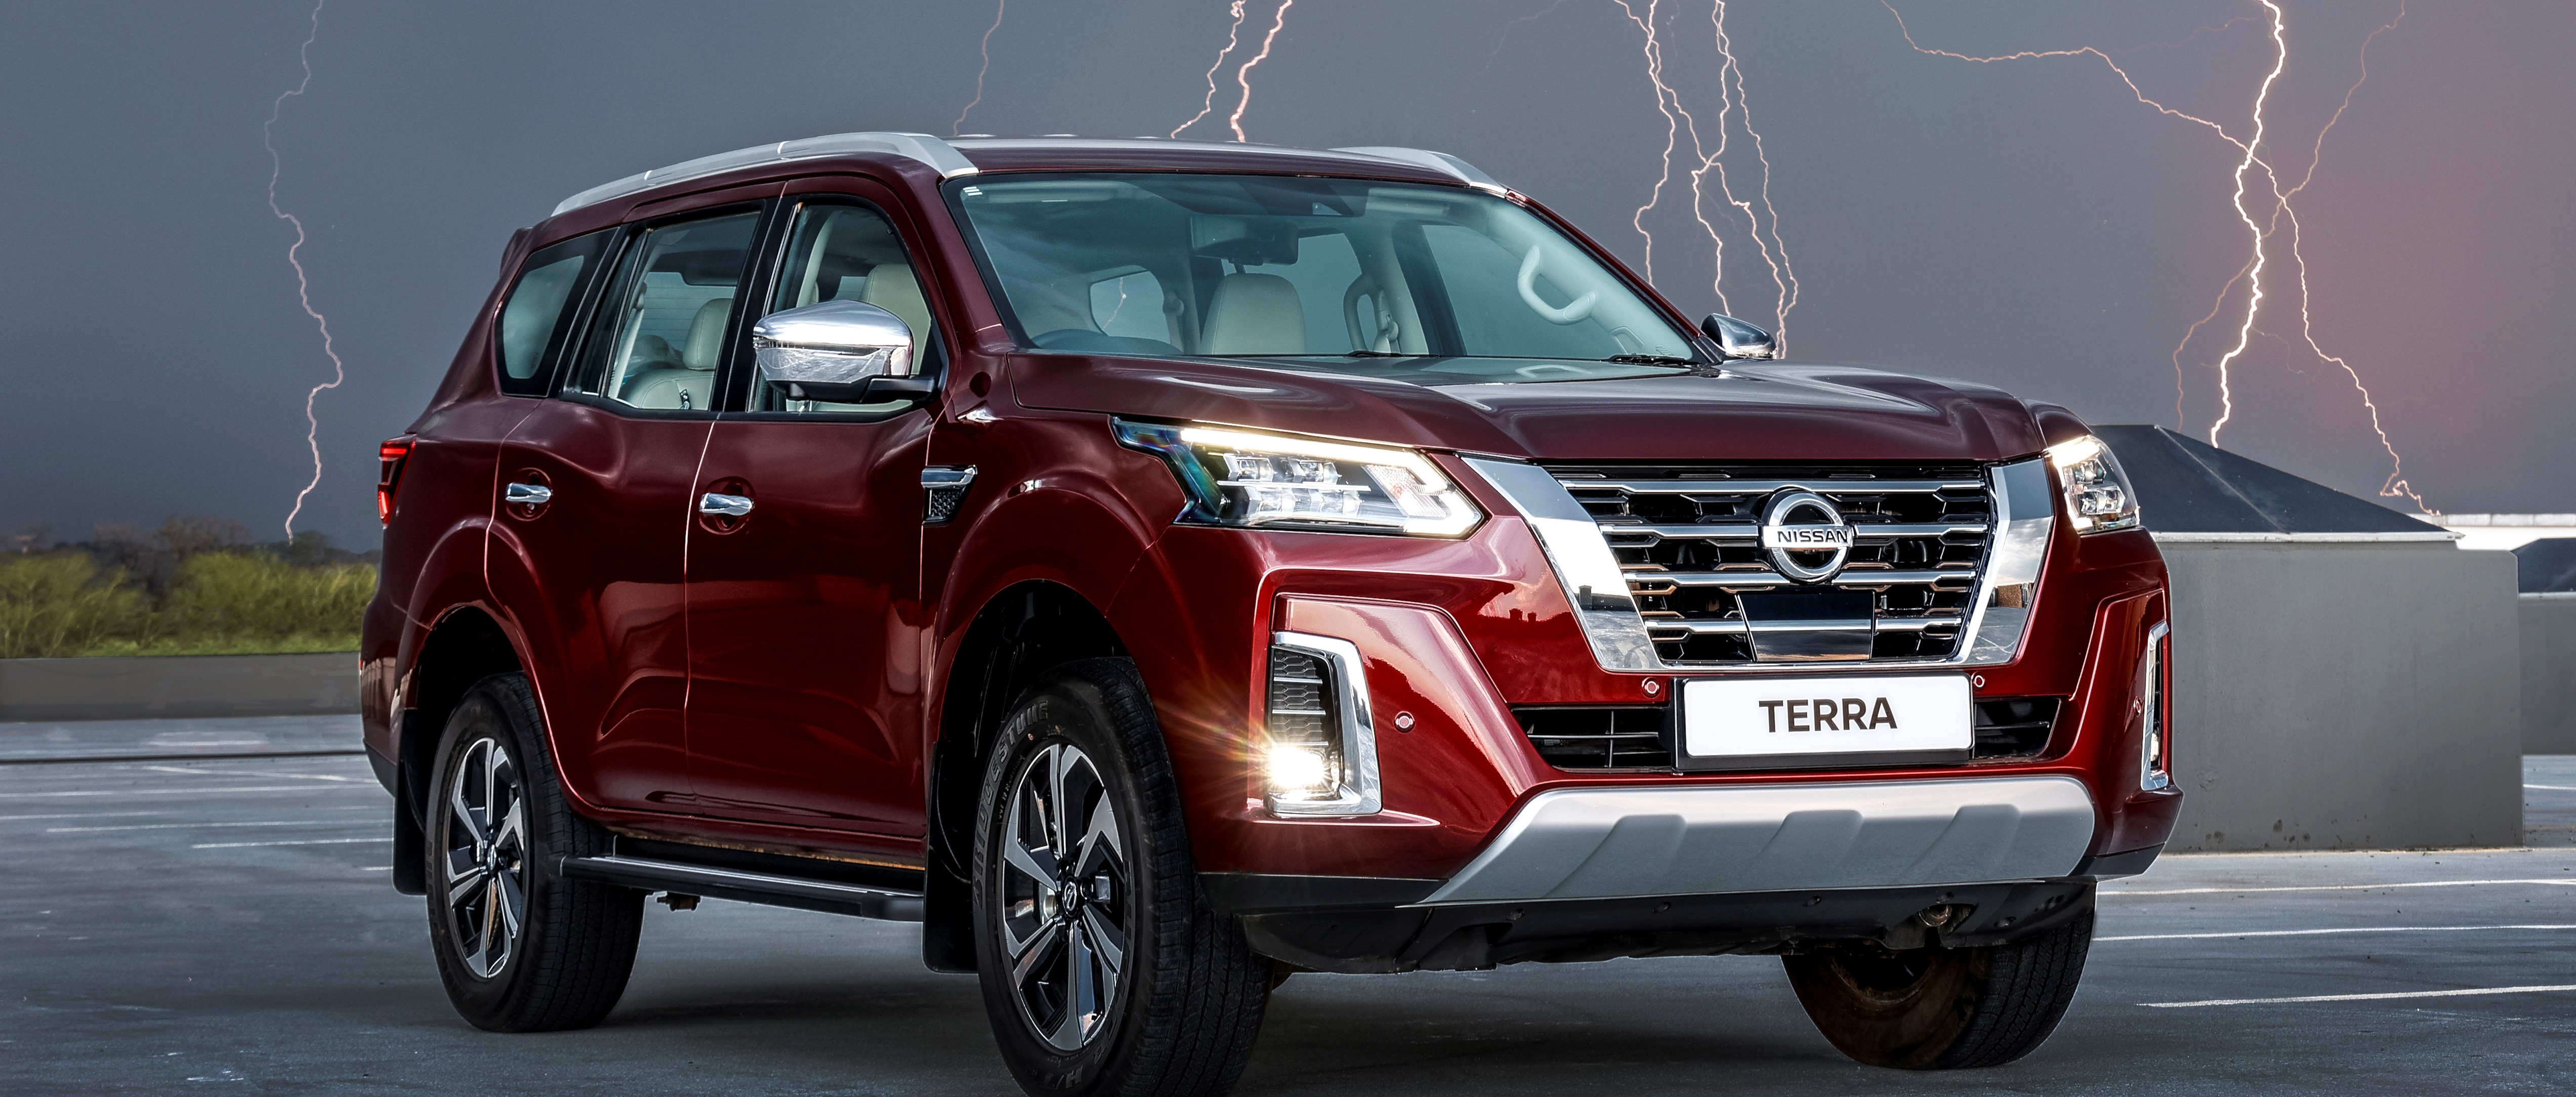 Novo Nissan Terra expande linha de SUVs em Angola